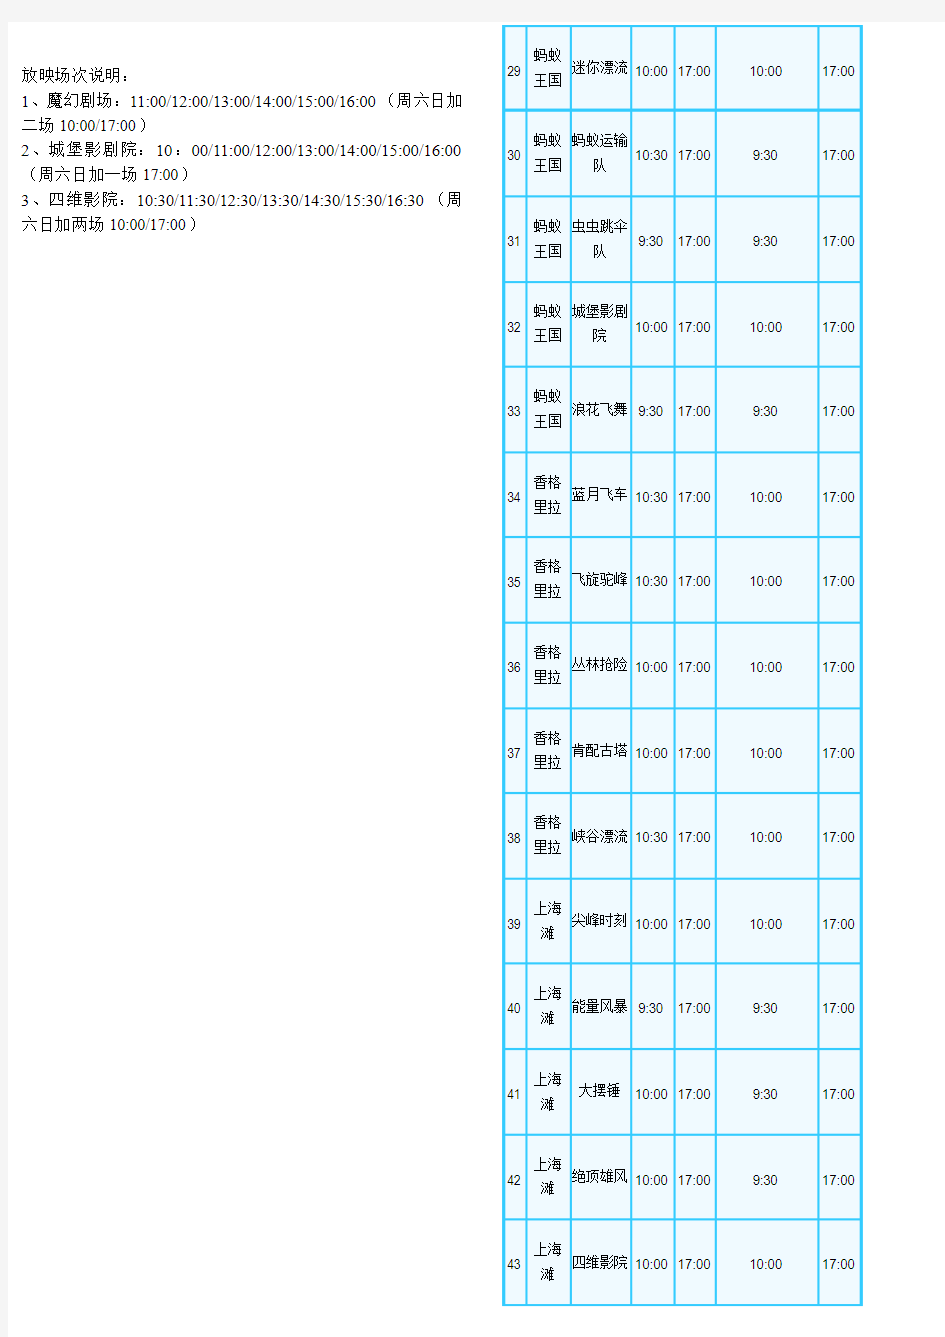 最全最新的上海欢乐谷游玩项目时间表